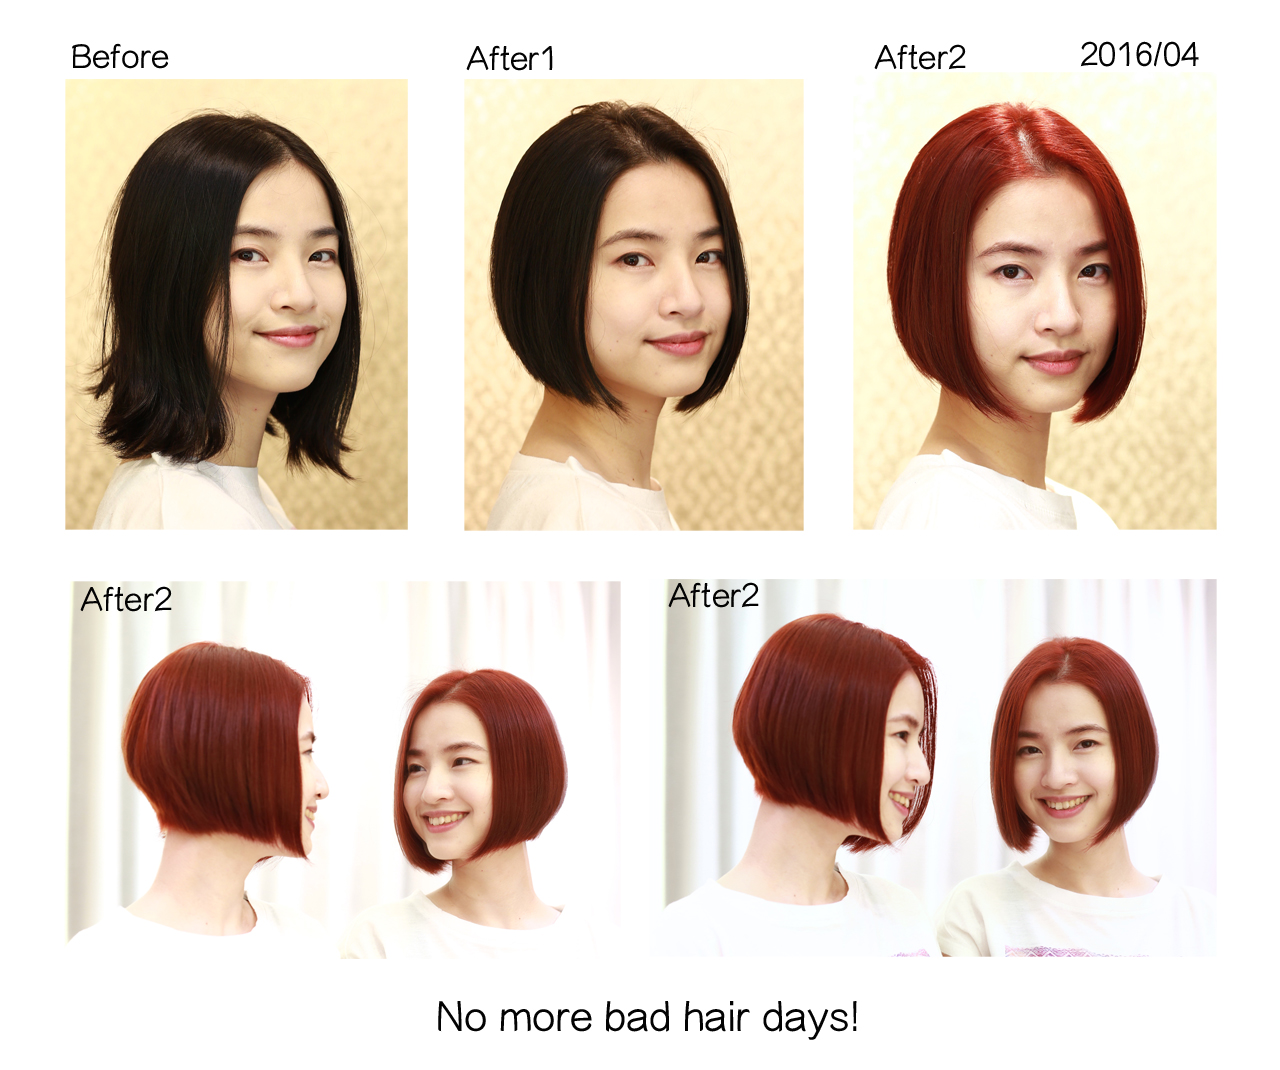 201604蘇小姐剪髮前後組圖1